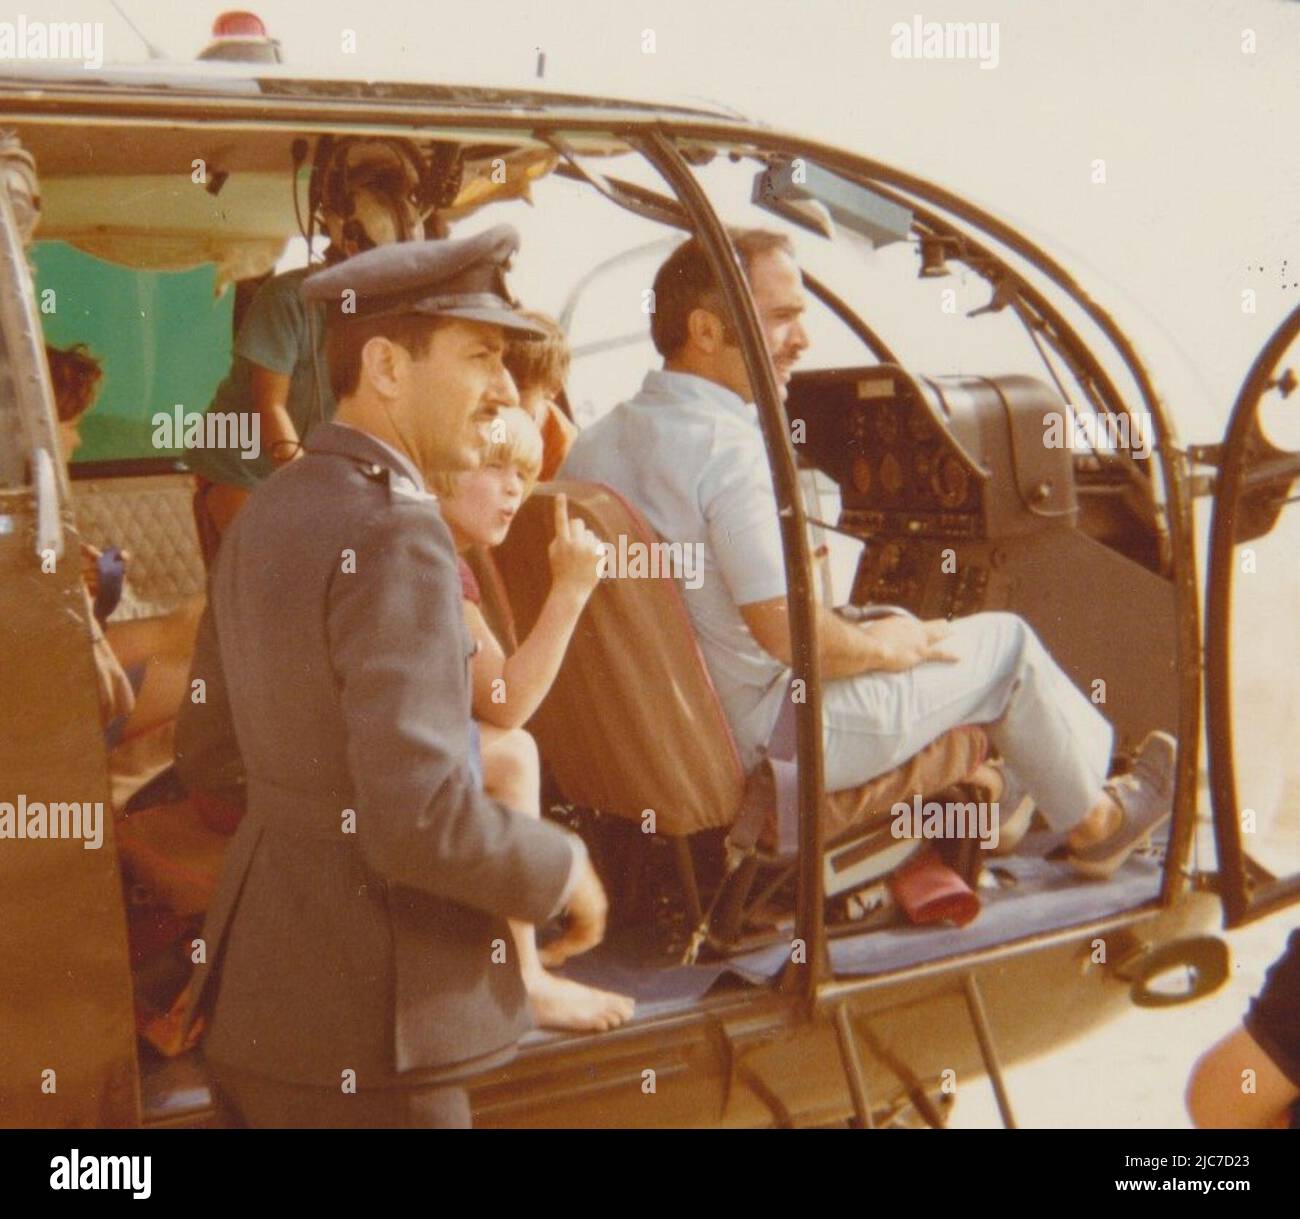 Le roi Hussein de Jordanie pilotant Un hélicoptère, 1974 Banque D'Images